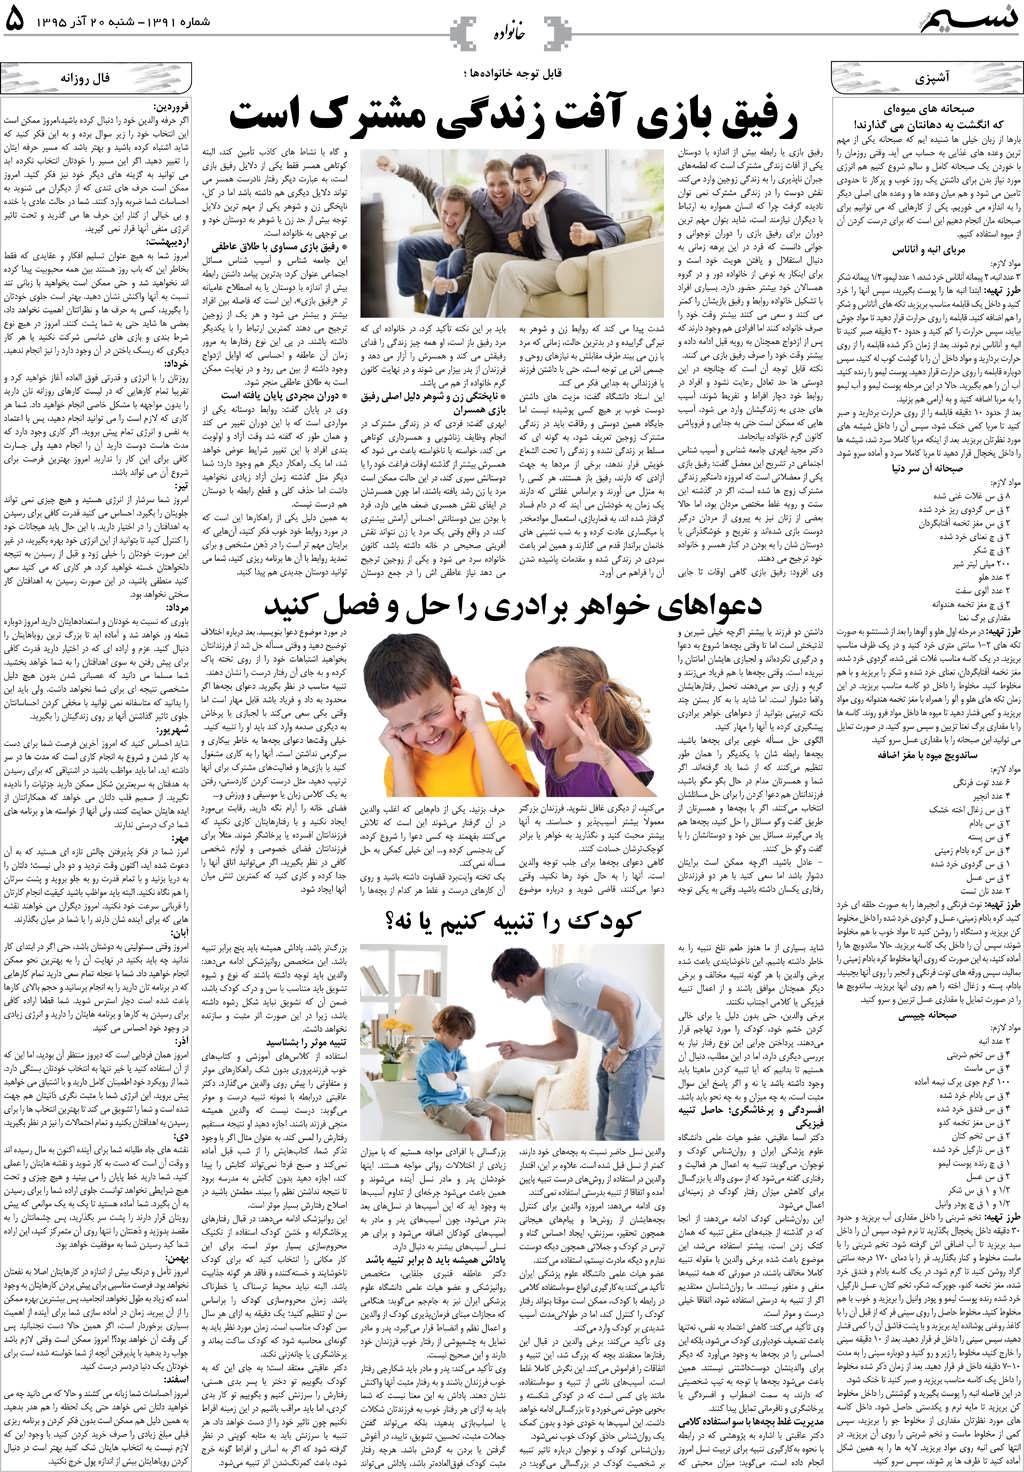 صفحه خانواده روزنامه نسیم شماره 1391